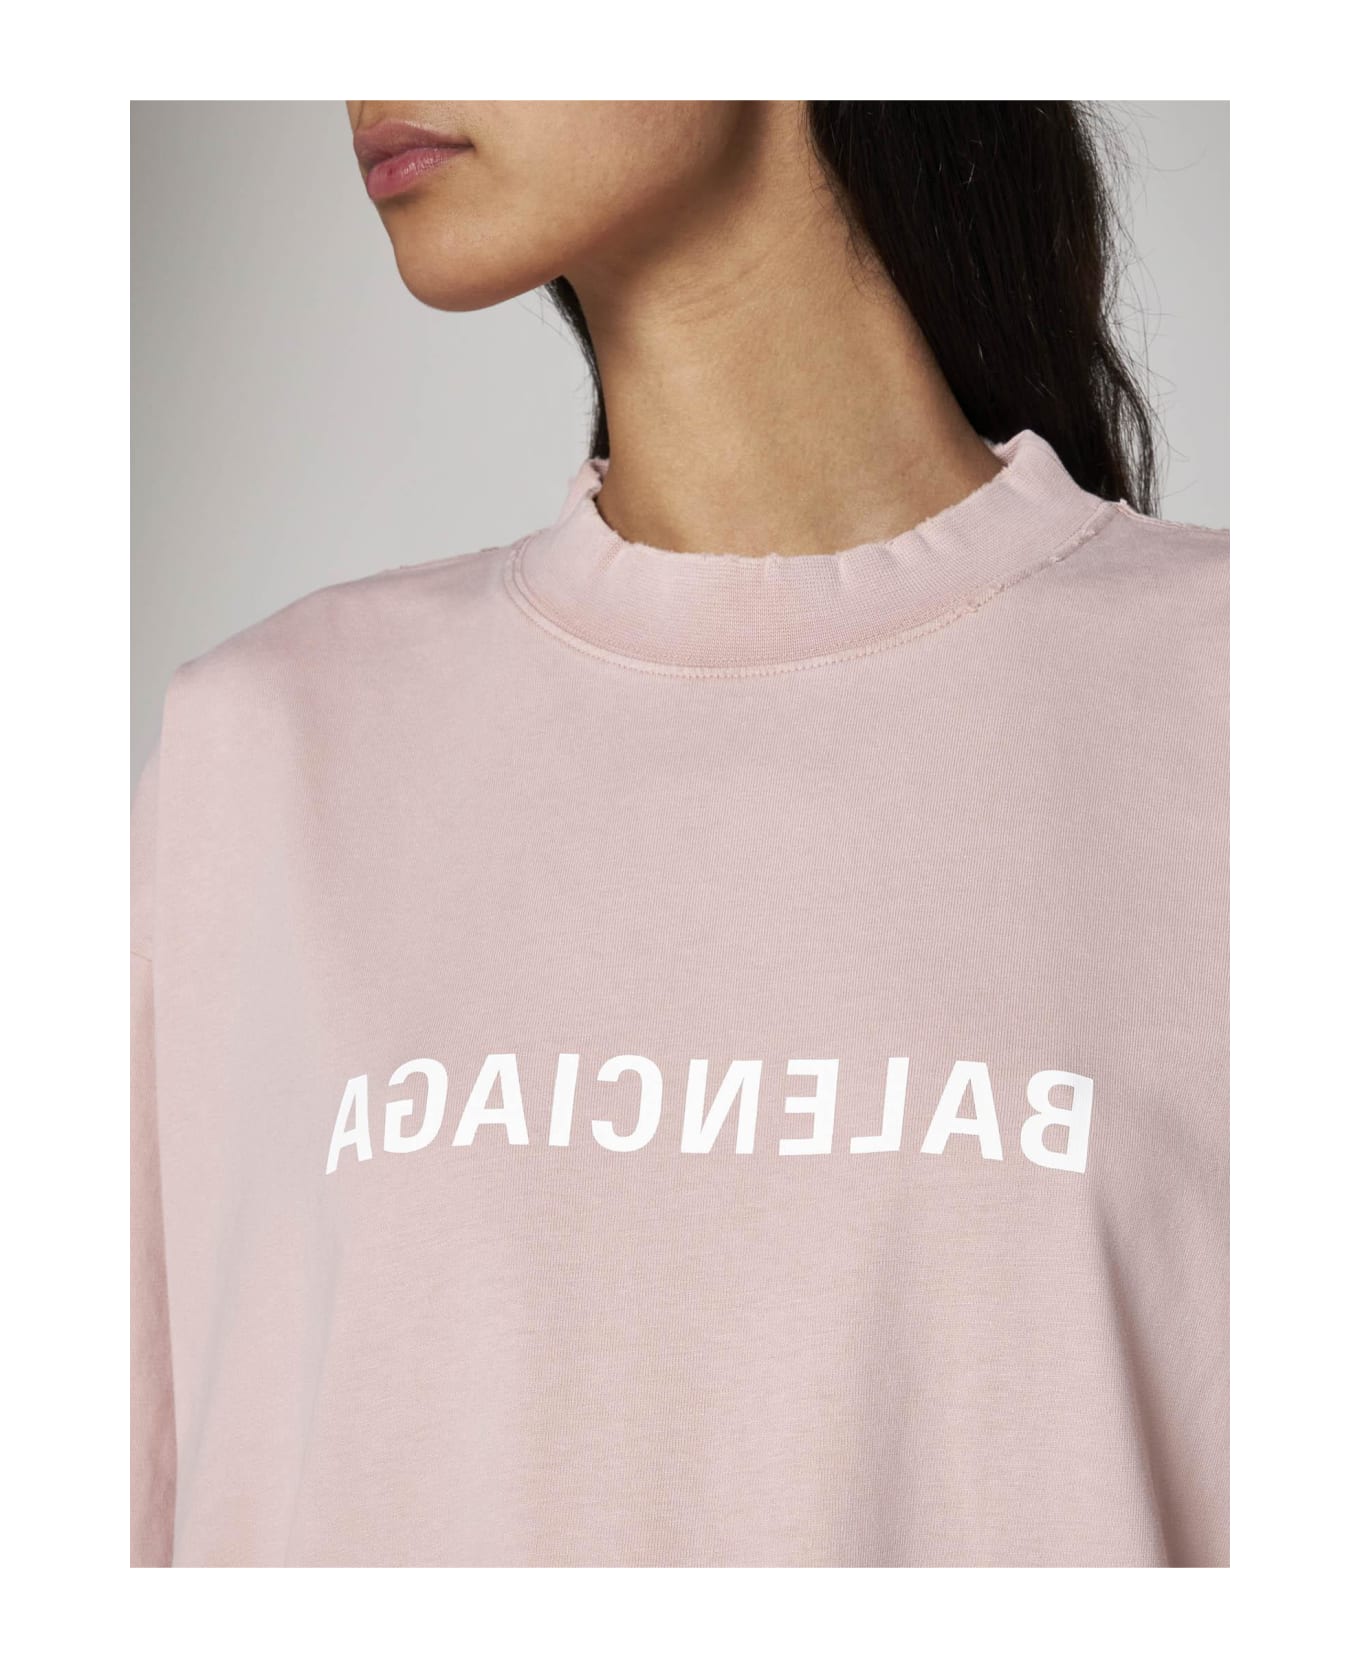 Balenciaga Logo Cotton T-shirt - Pink